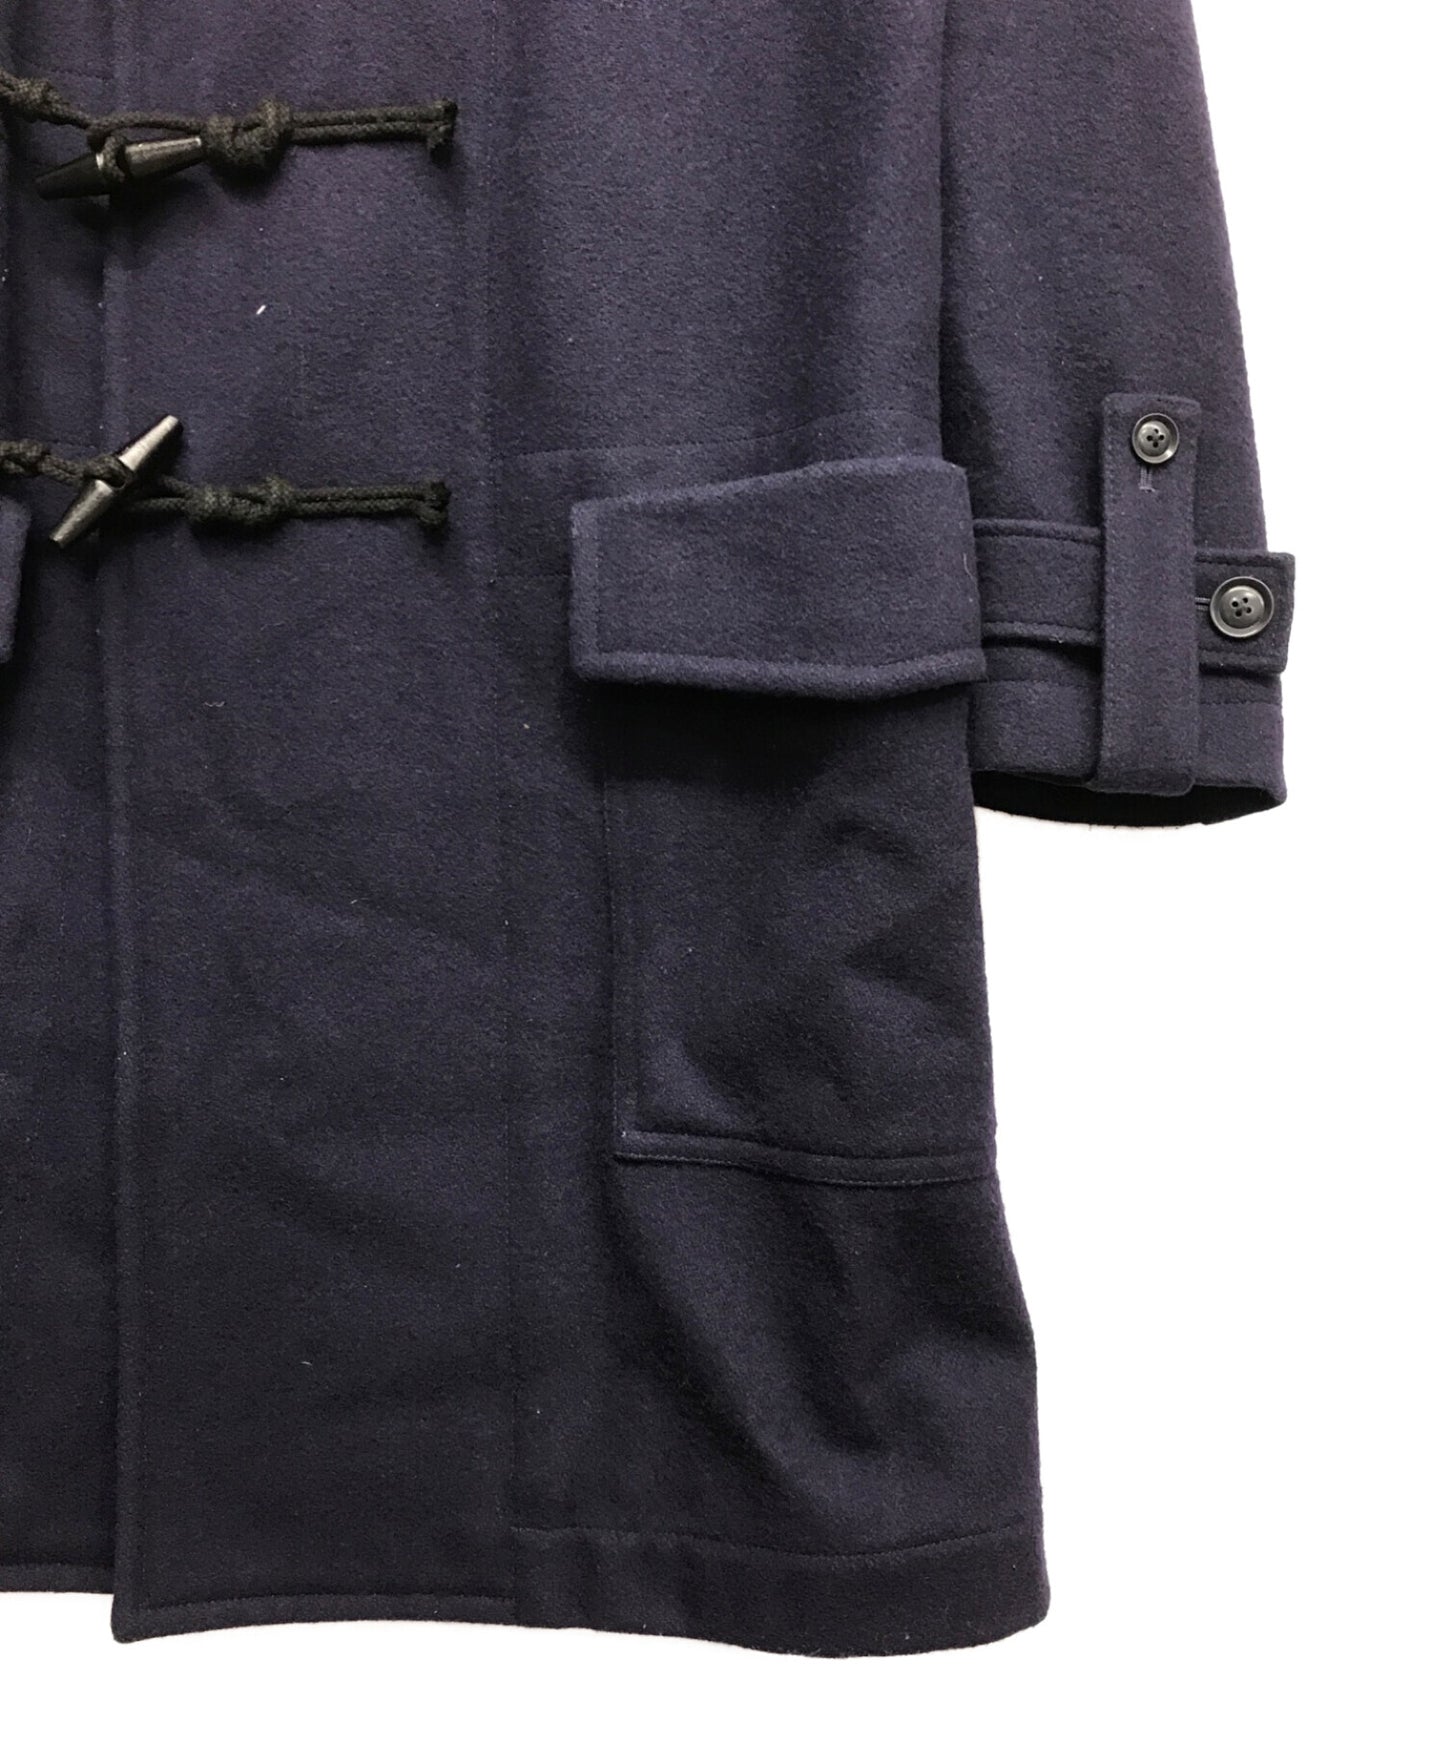 Ground Y Duffle Coat Coat GC-C01-102